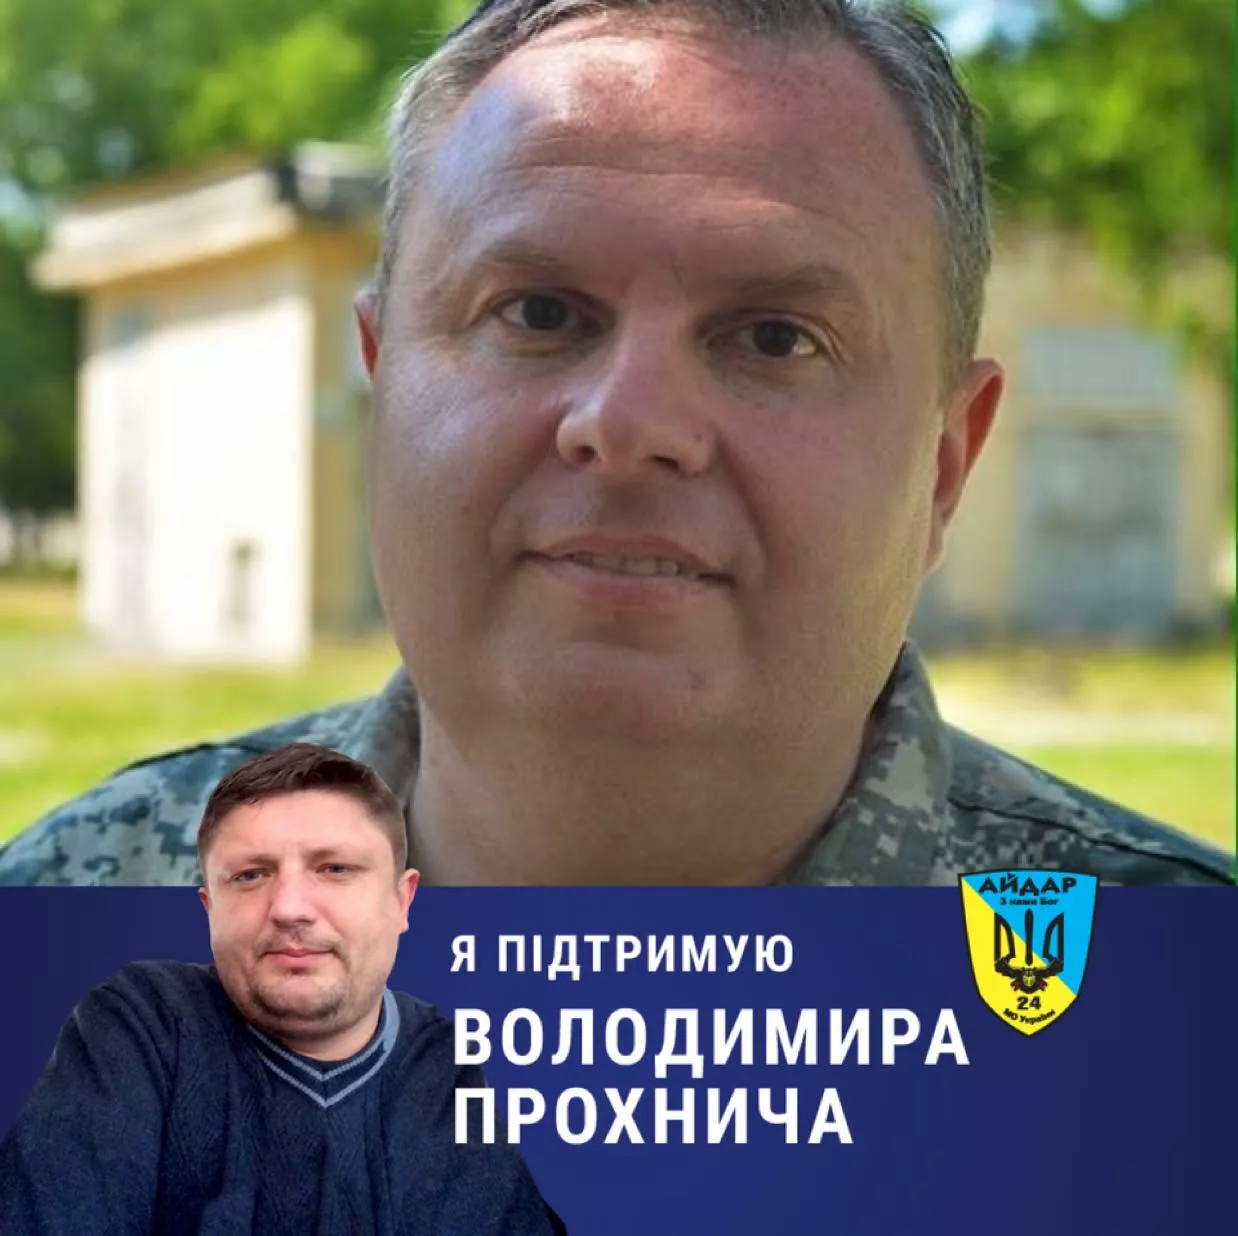 Анатолий Кушнирчук рассказал "Сегодня" о сложном боевом пути Владимира Прохнича